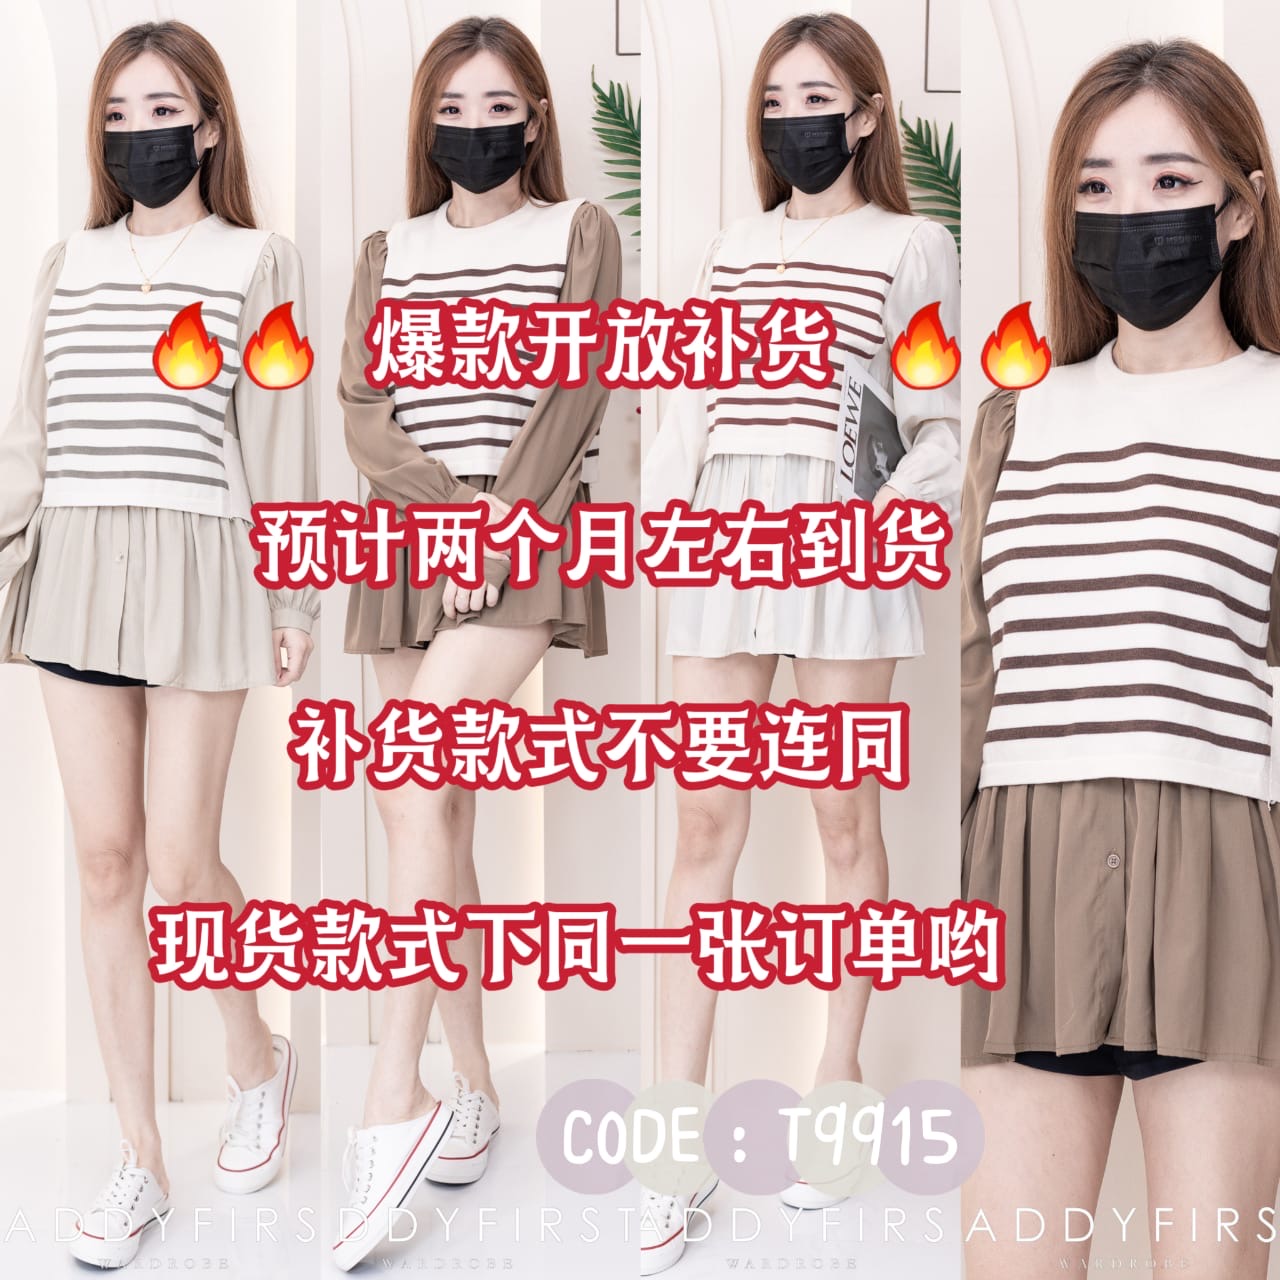 【T99151】⚡补货预订款⚡两件式韩系时尚宽松娃娃衬衫上衣➕针织线条无袖上衣 ❤❤